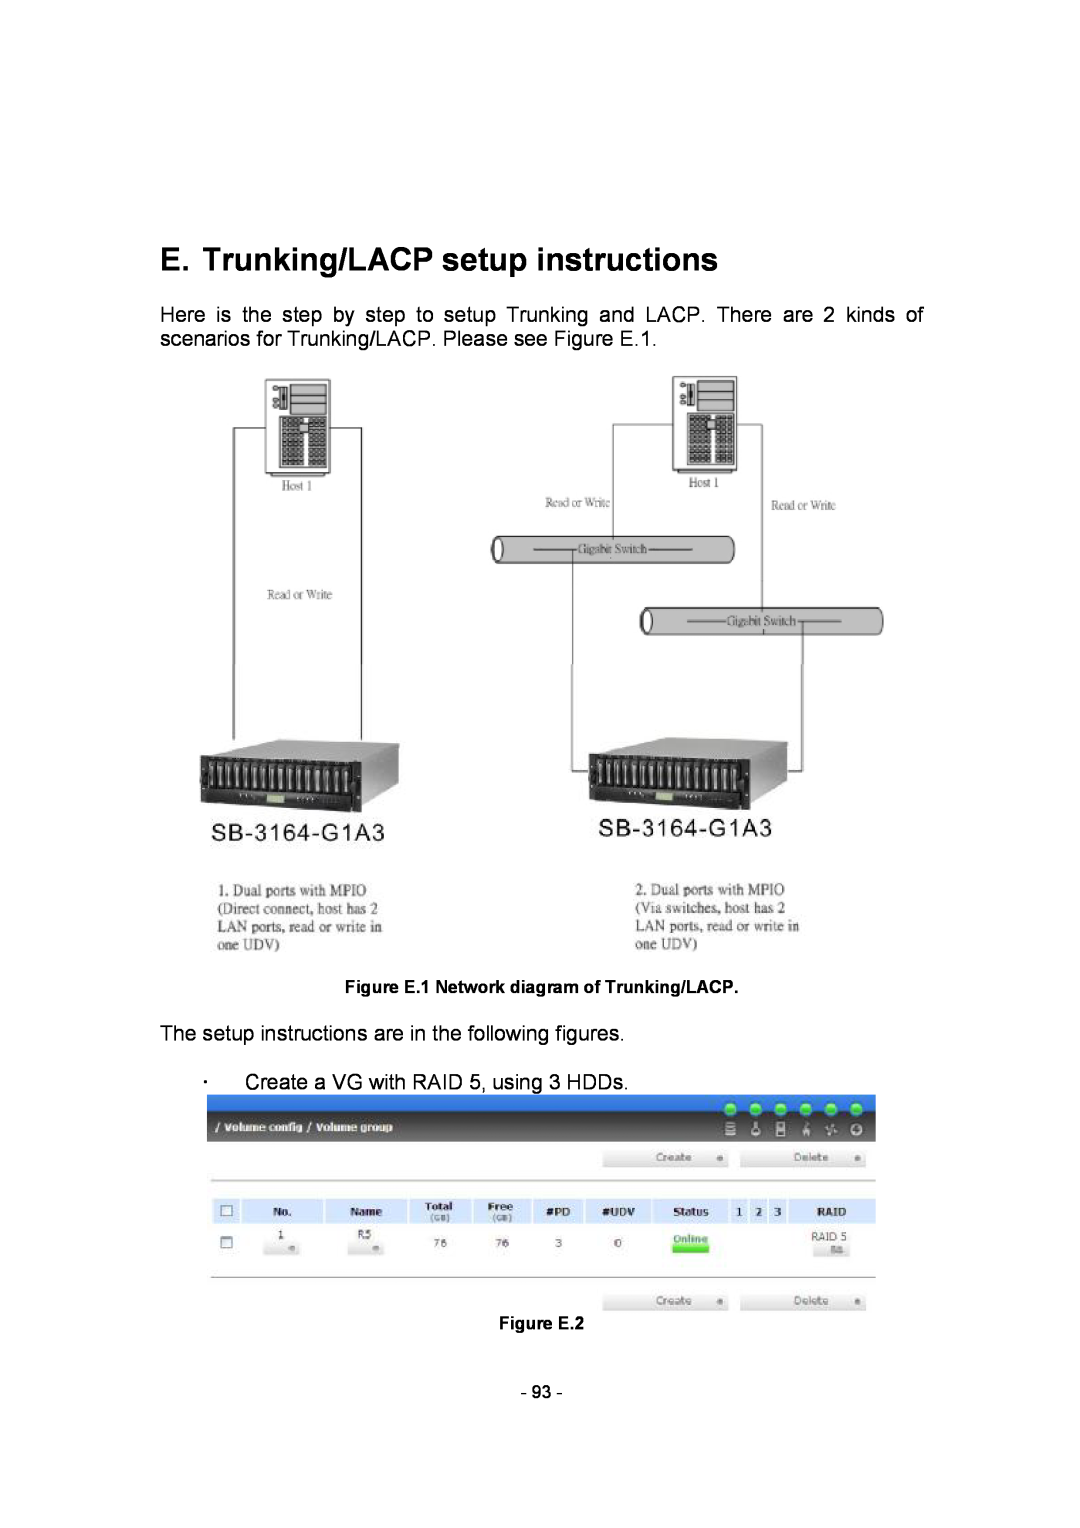 APC SCSI-SATA II E. Trunking/LACP setup instructions, The setup instructions are in the following figures, Figure E.2 